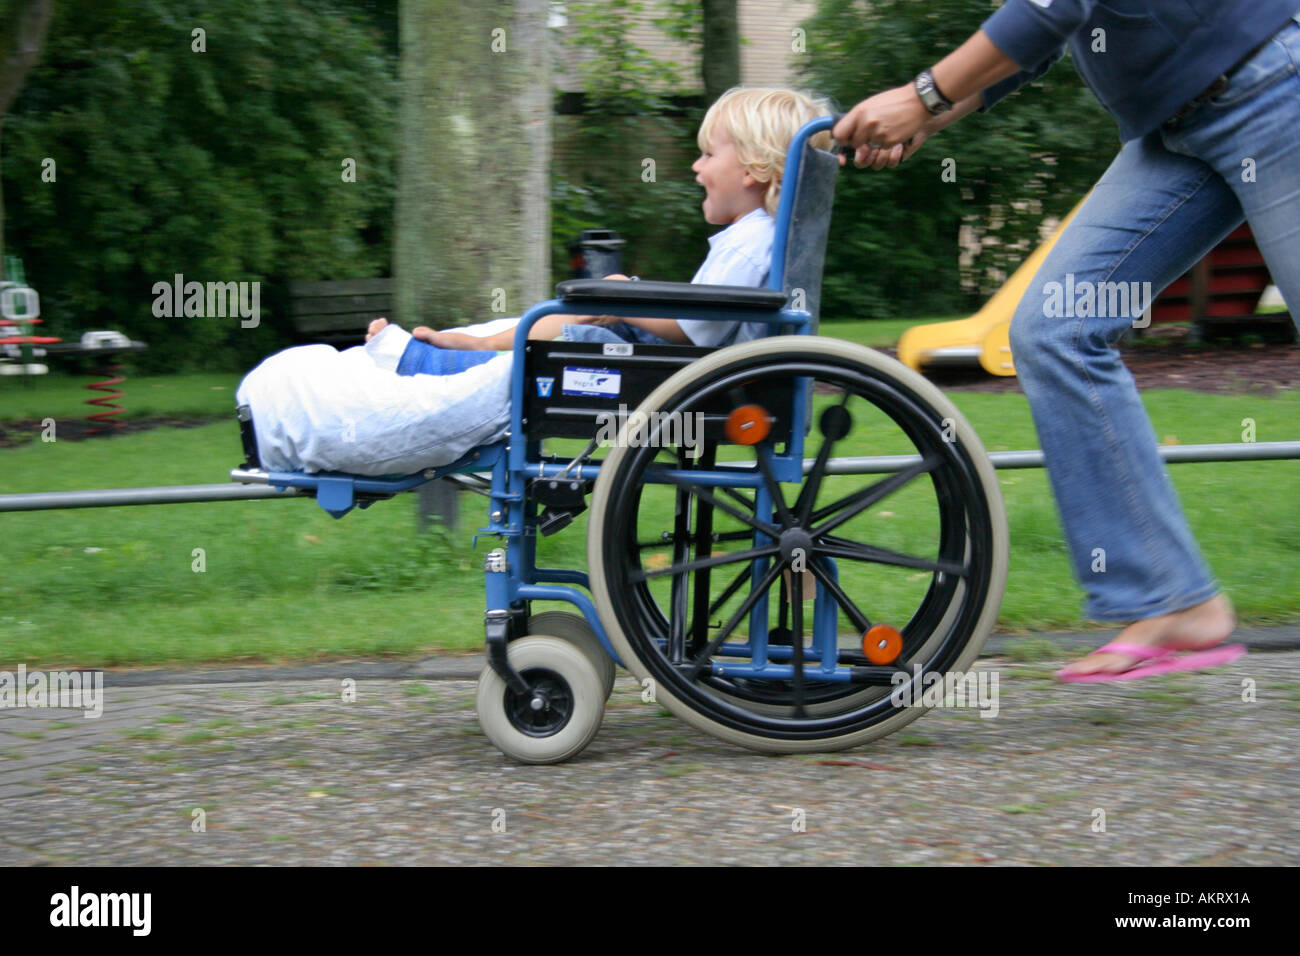 Petit garçon avec une jambe cassée dans un fauteuil roulant Photo Stock -  Alamy